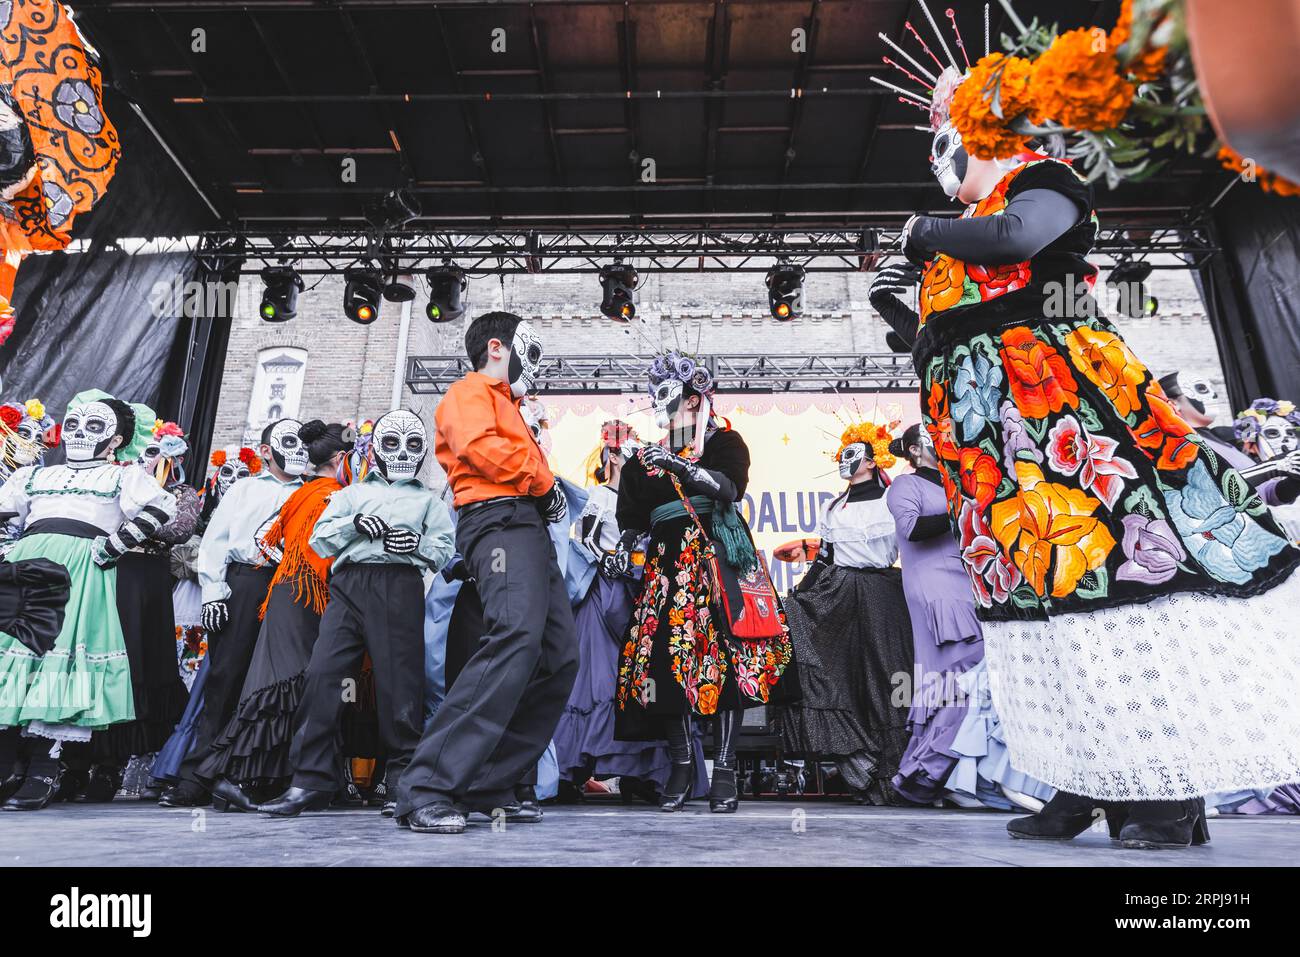 Des gens dansant sur scène au festival Dias de Los Muertos, vêtus de costumes spécifiques et portant des masques de crâne de sucre Banque D'Images